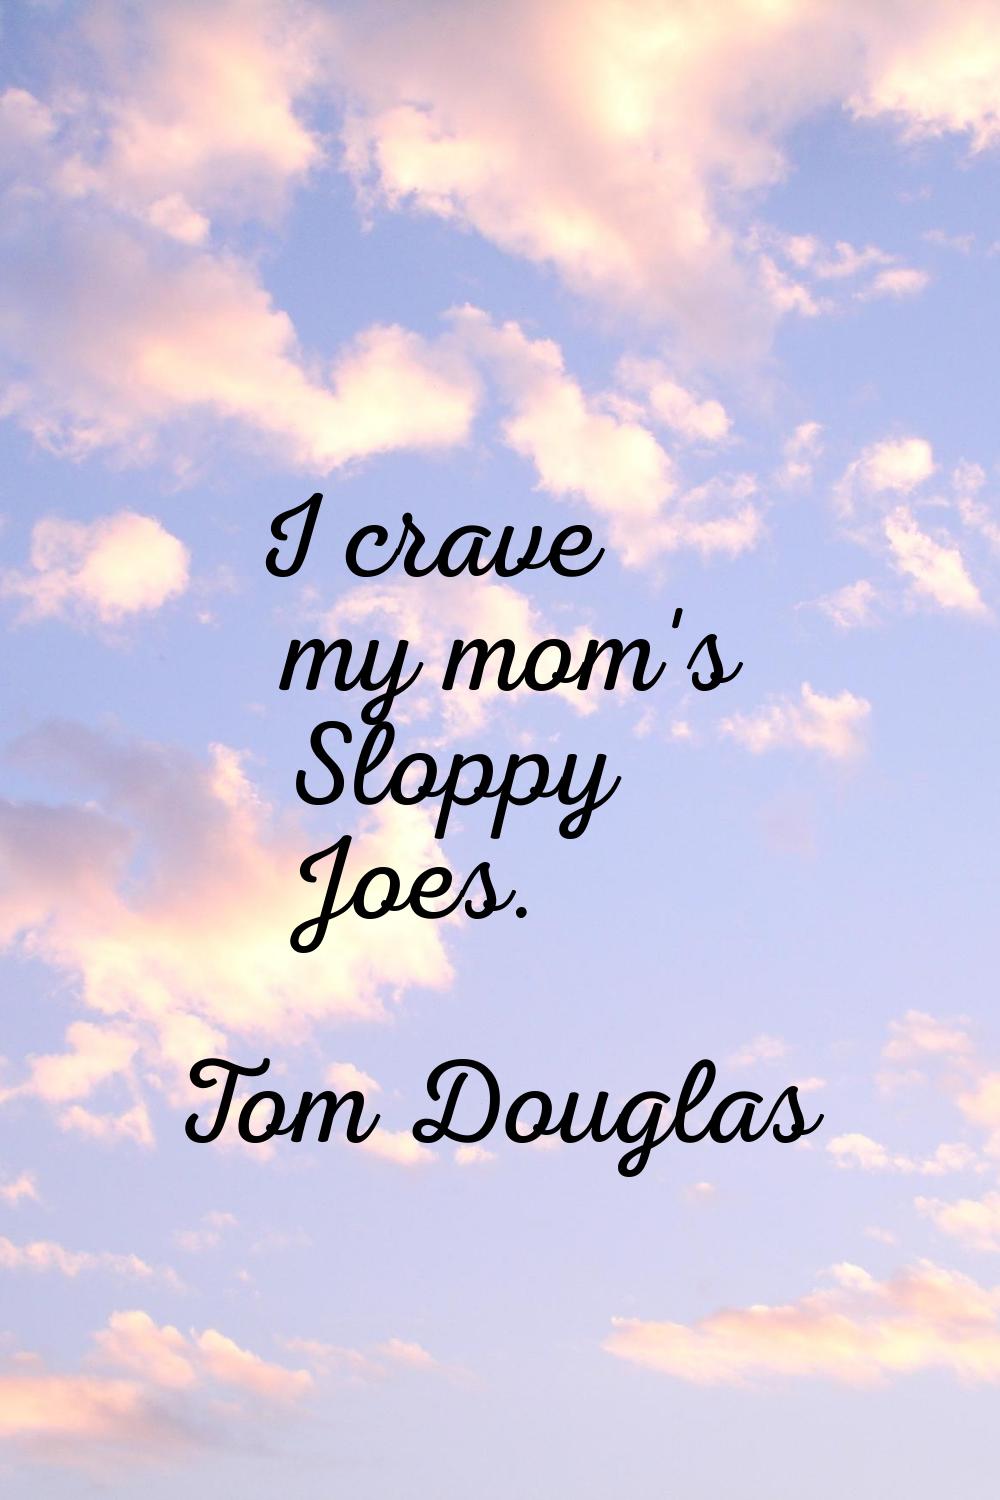 I crave my mom's Sloppy Joes.